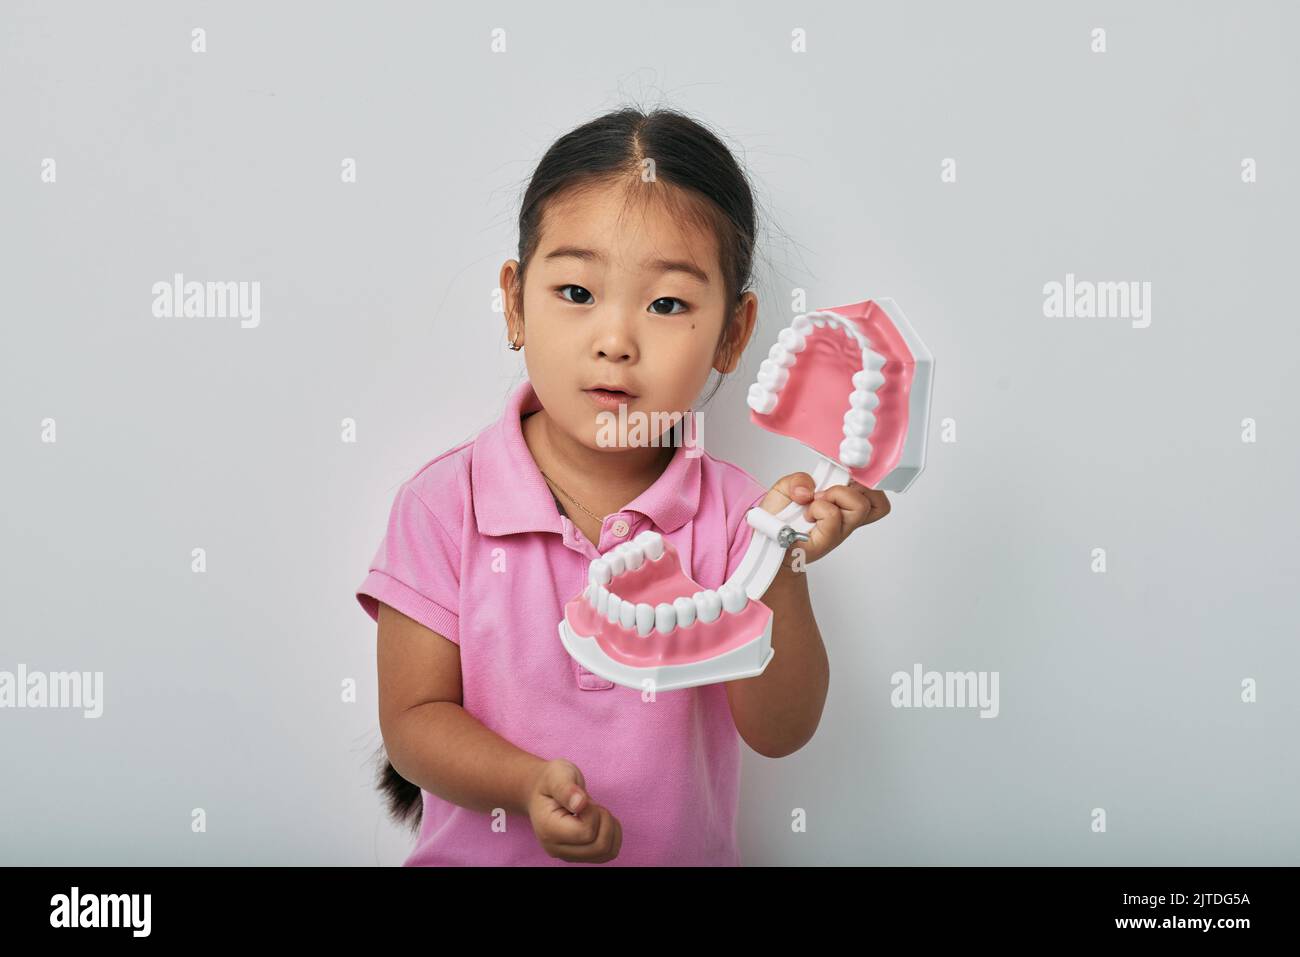 Concept de soins dentaires et de soins dentaires pour les enfants. Jolie femme coréenne montrant un modèle anatomique de dents sur fond gris Banque D'Images